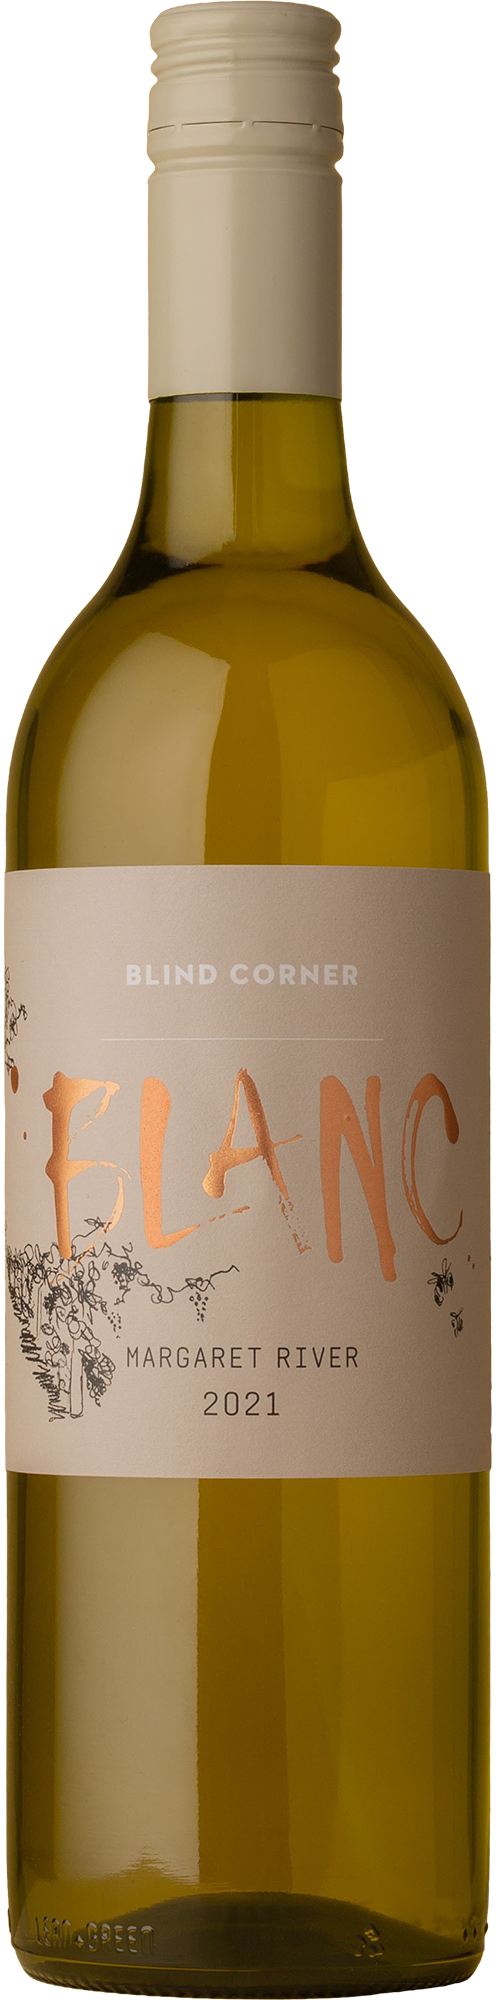 Blind Corner - Blanc White Blend 2021 White Wine